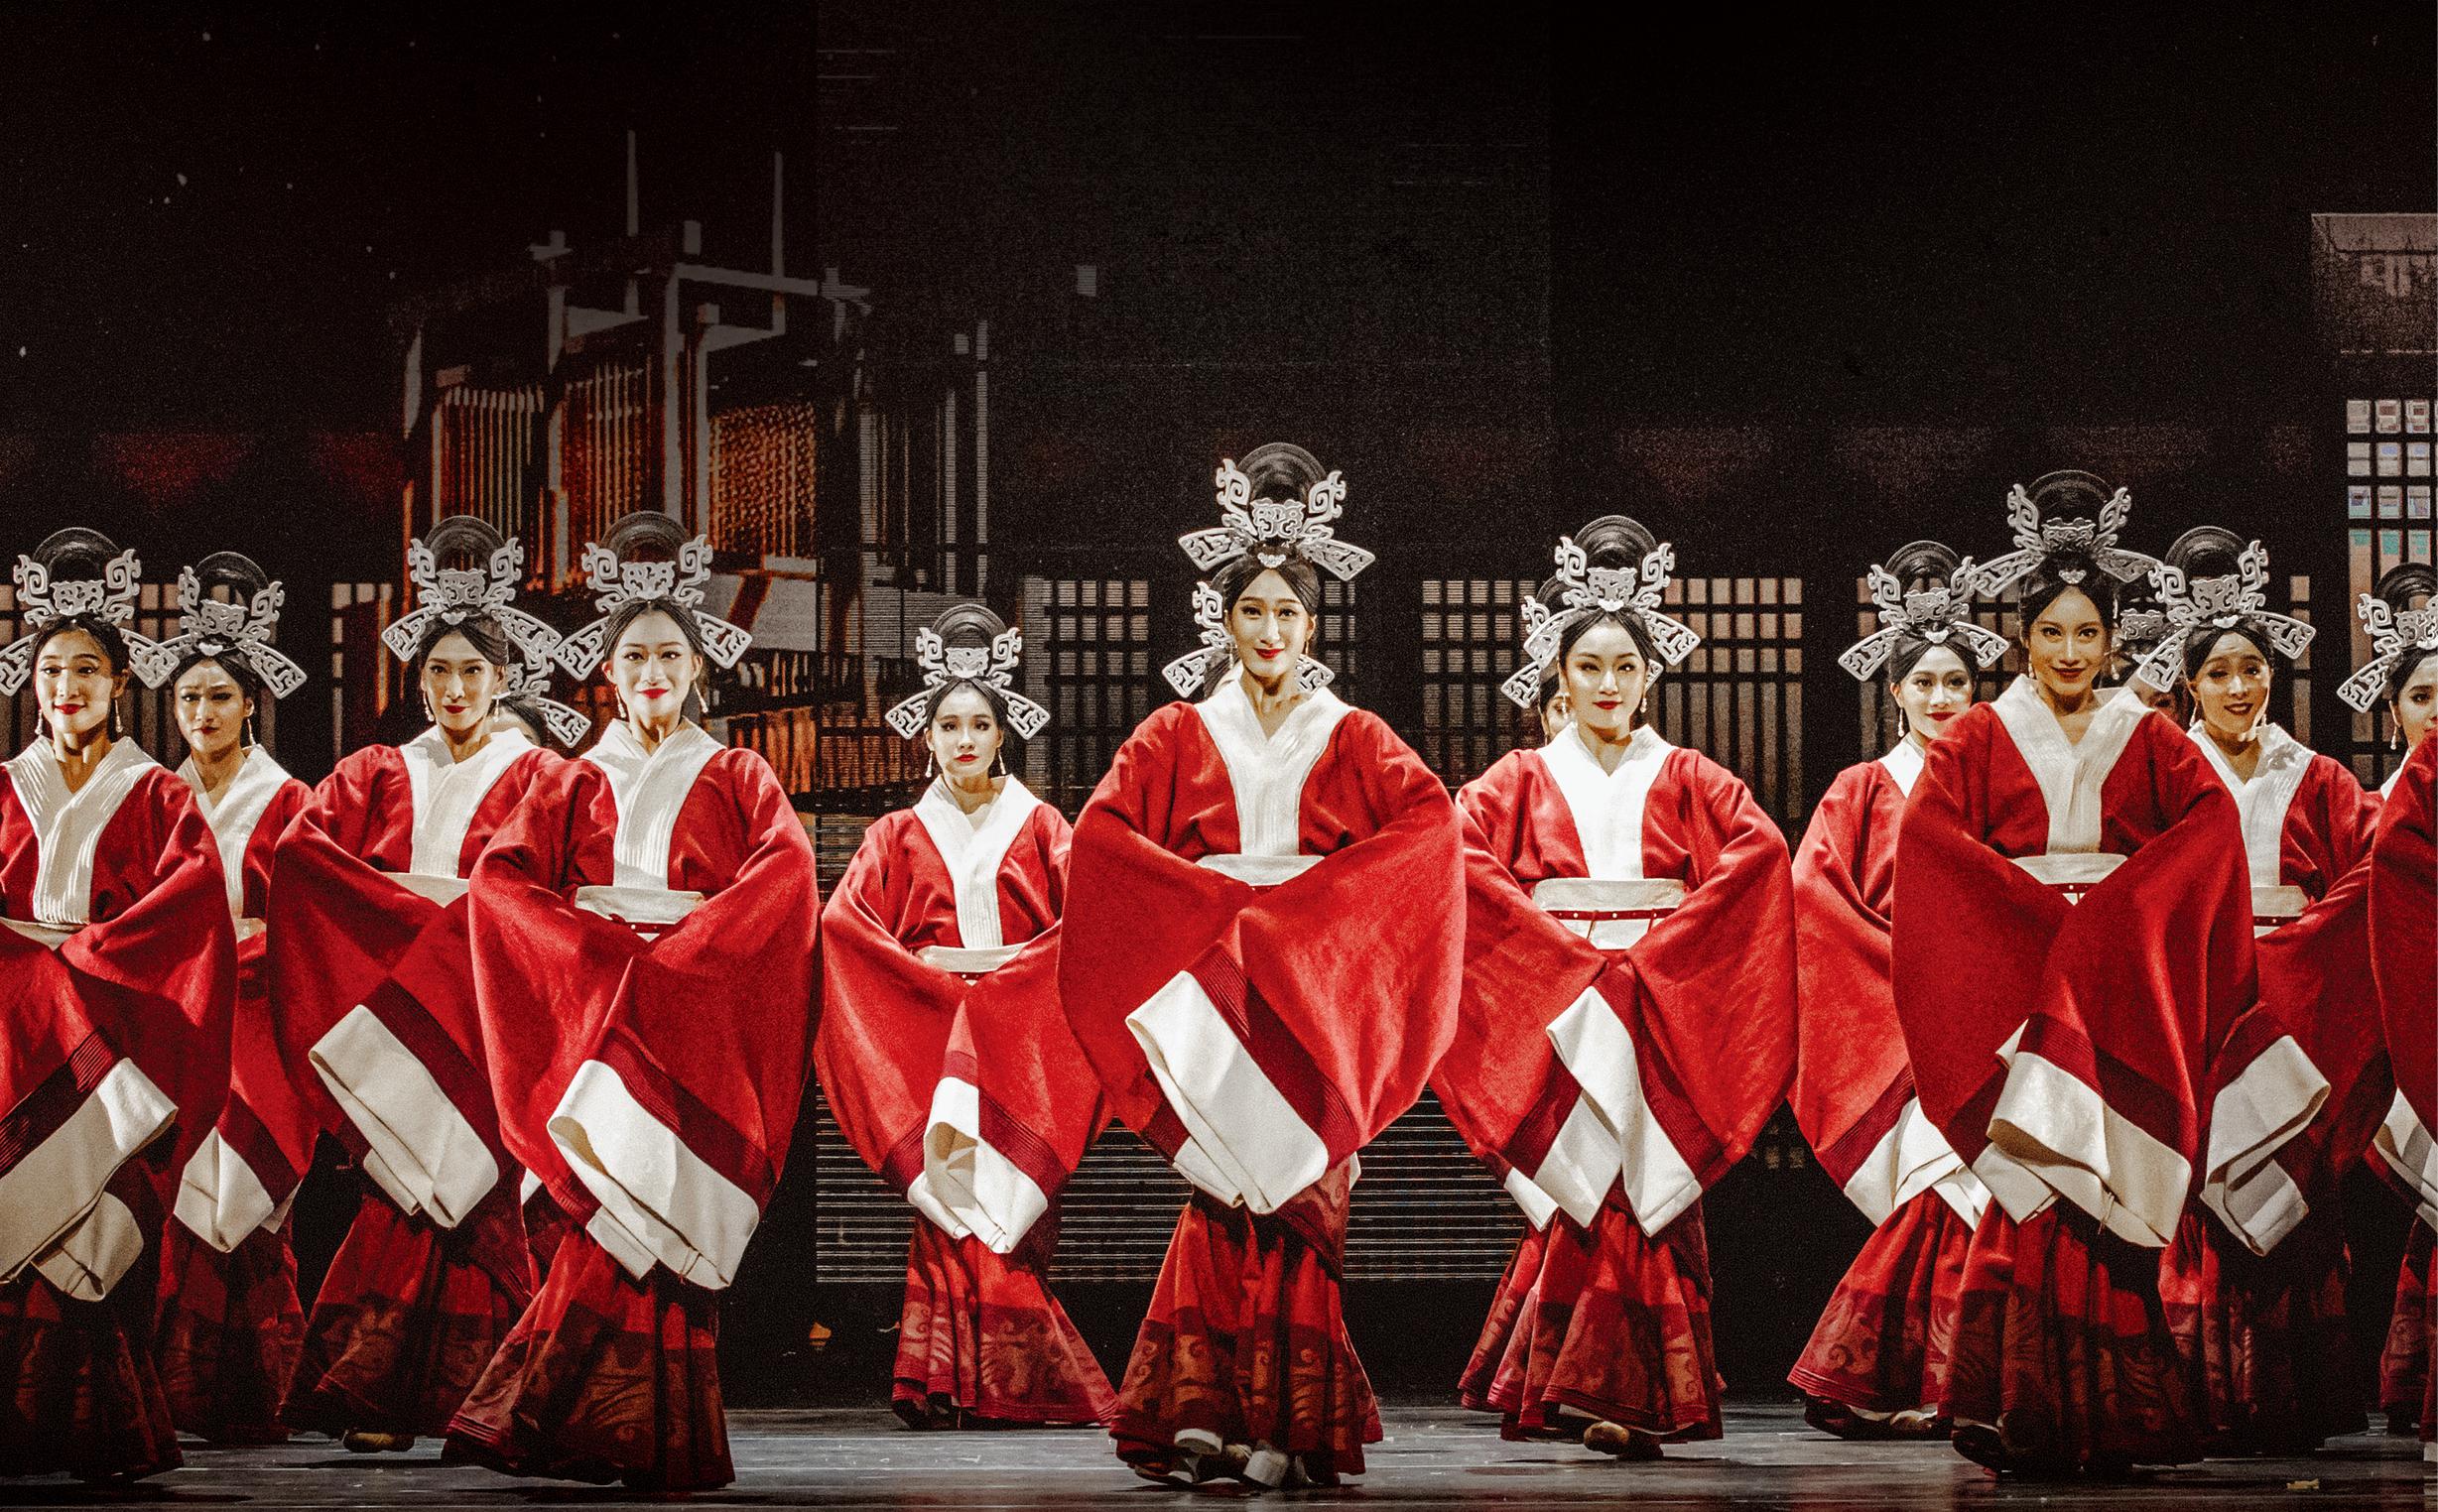 首届「中华文化节」将于六月至九月期间举行。图示开幕节目——北京歌剧舞剧院演出舞剧《五星出东方》的剧照。